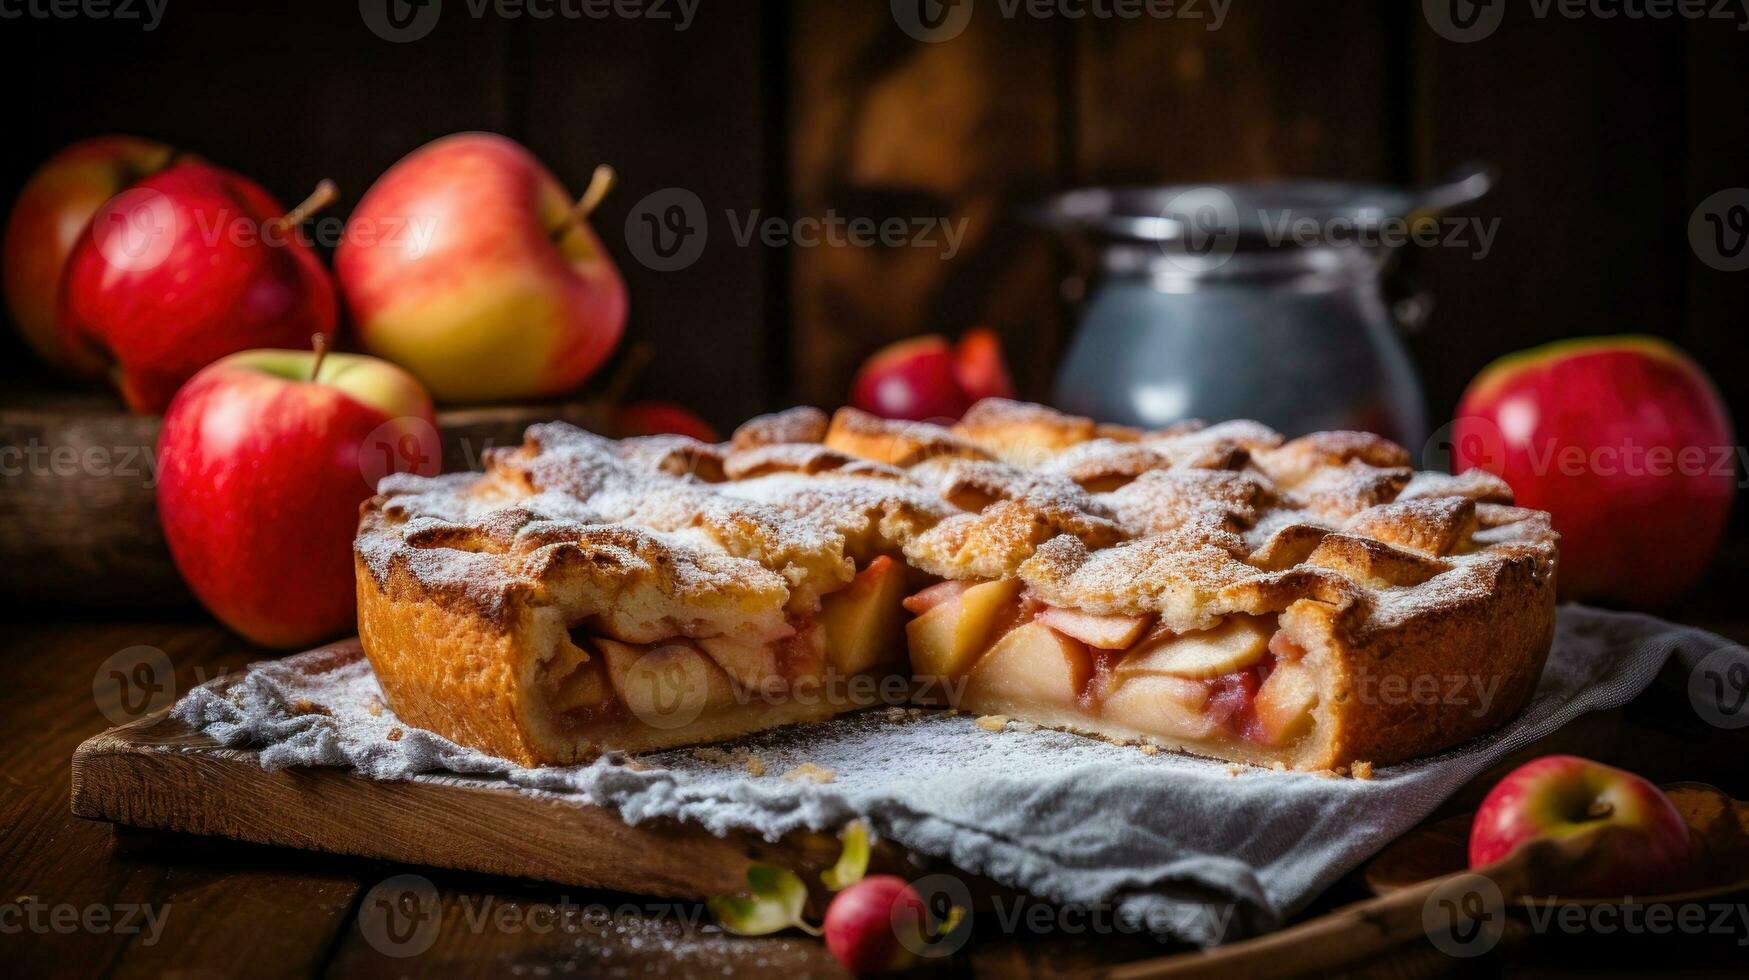 appel taart in rustiek achtergrond foto